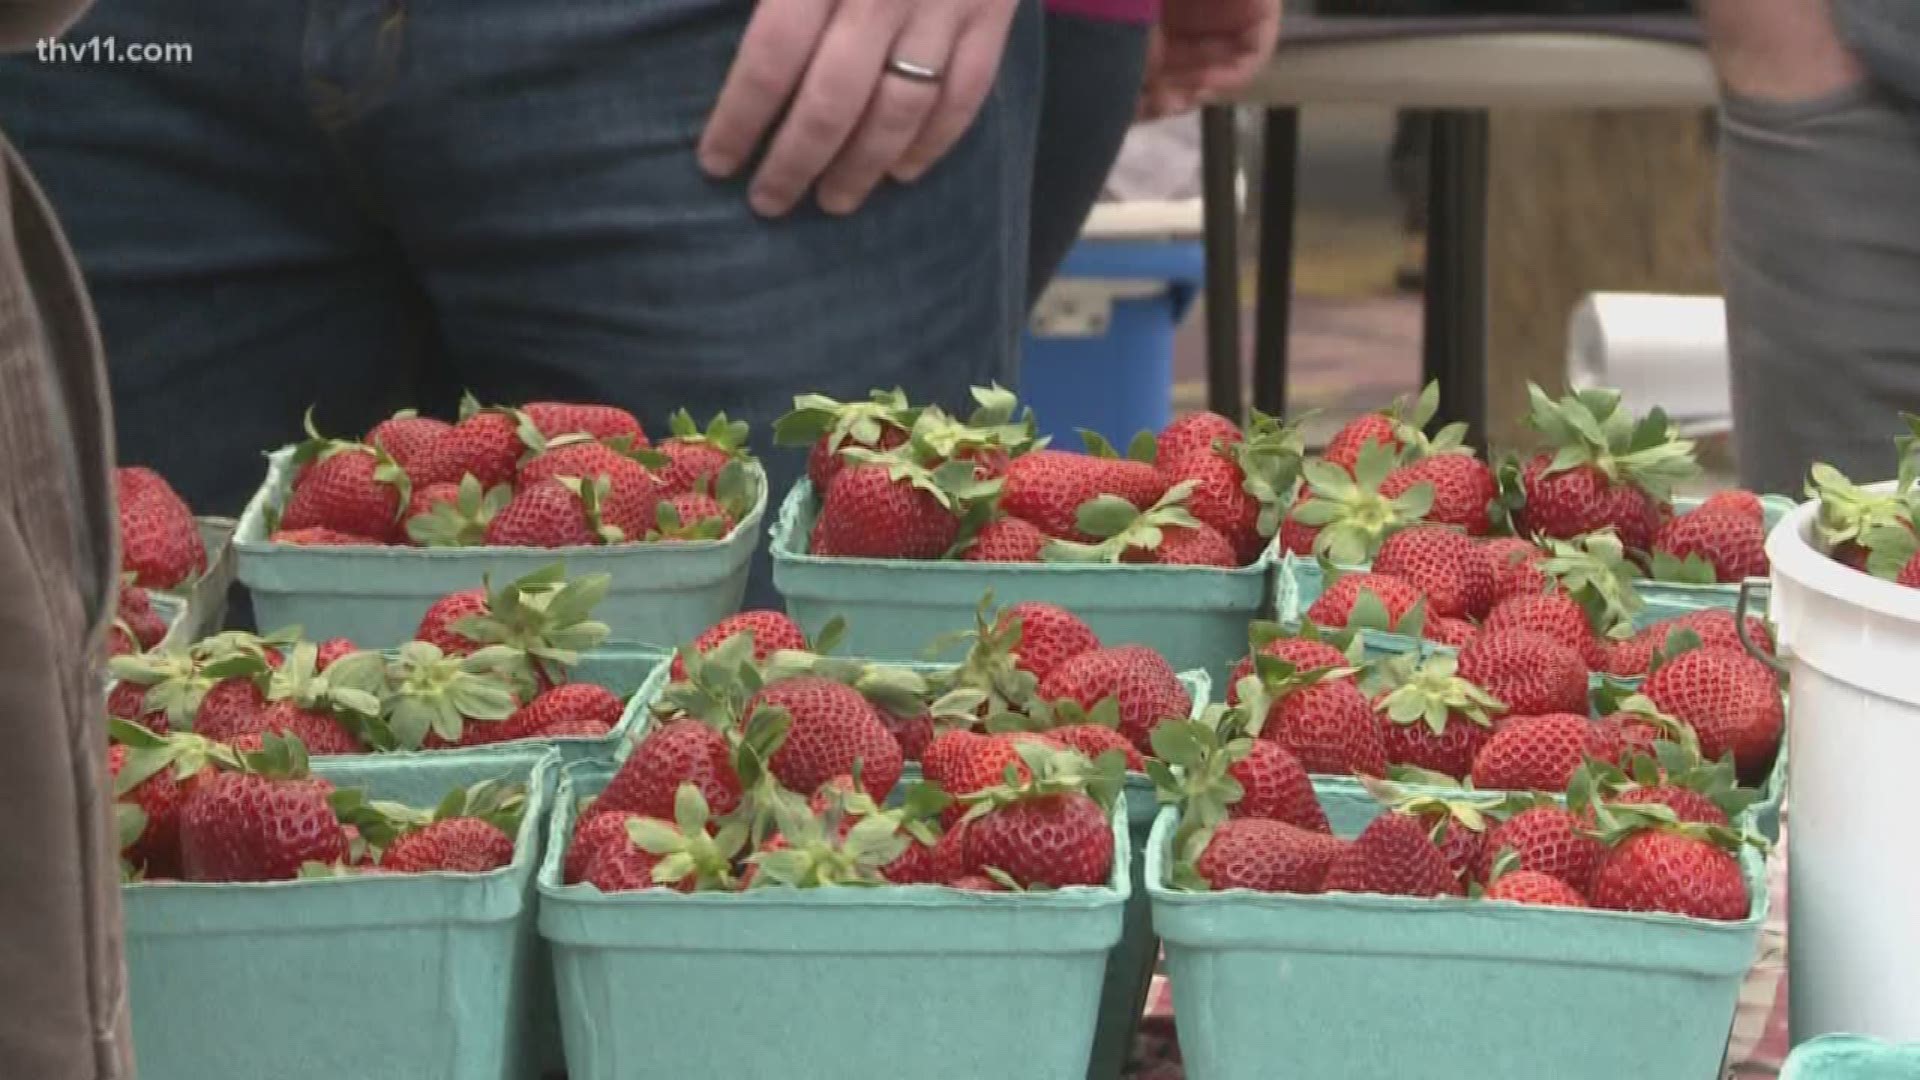 Bernice Garden Farmer's Market holds Strawberry Festival